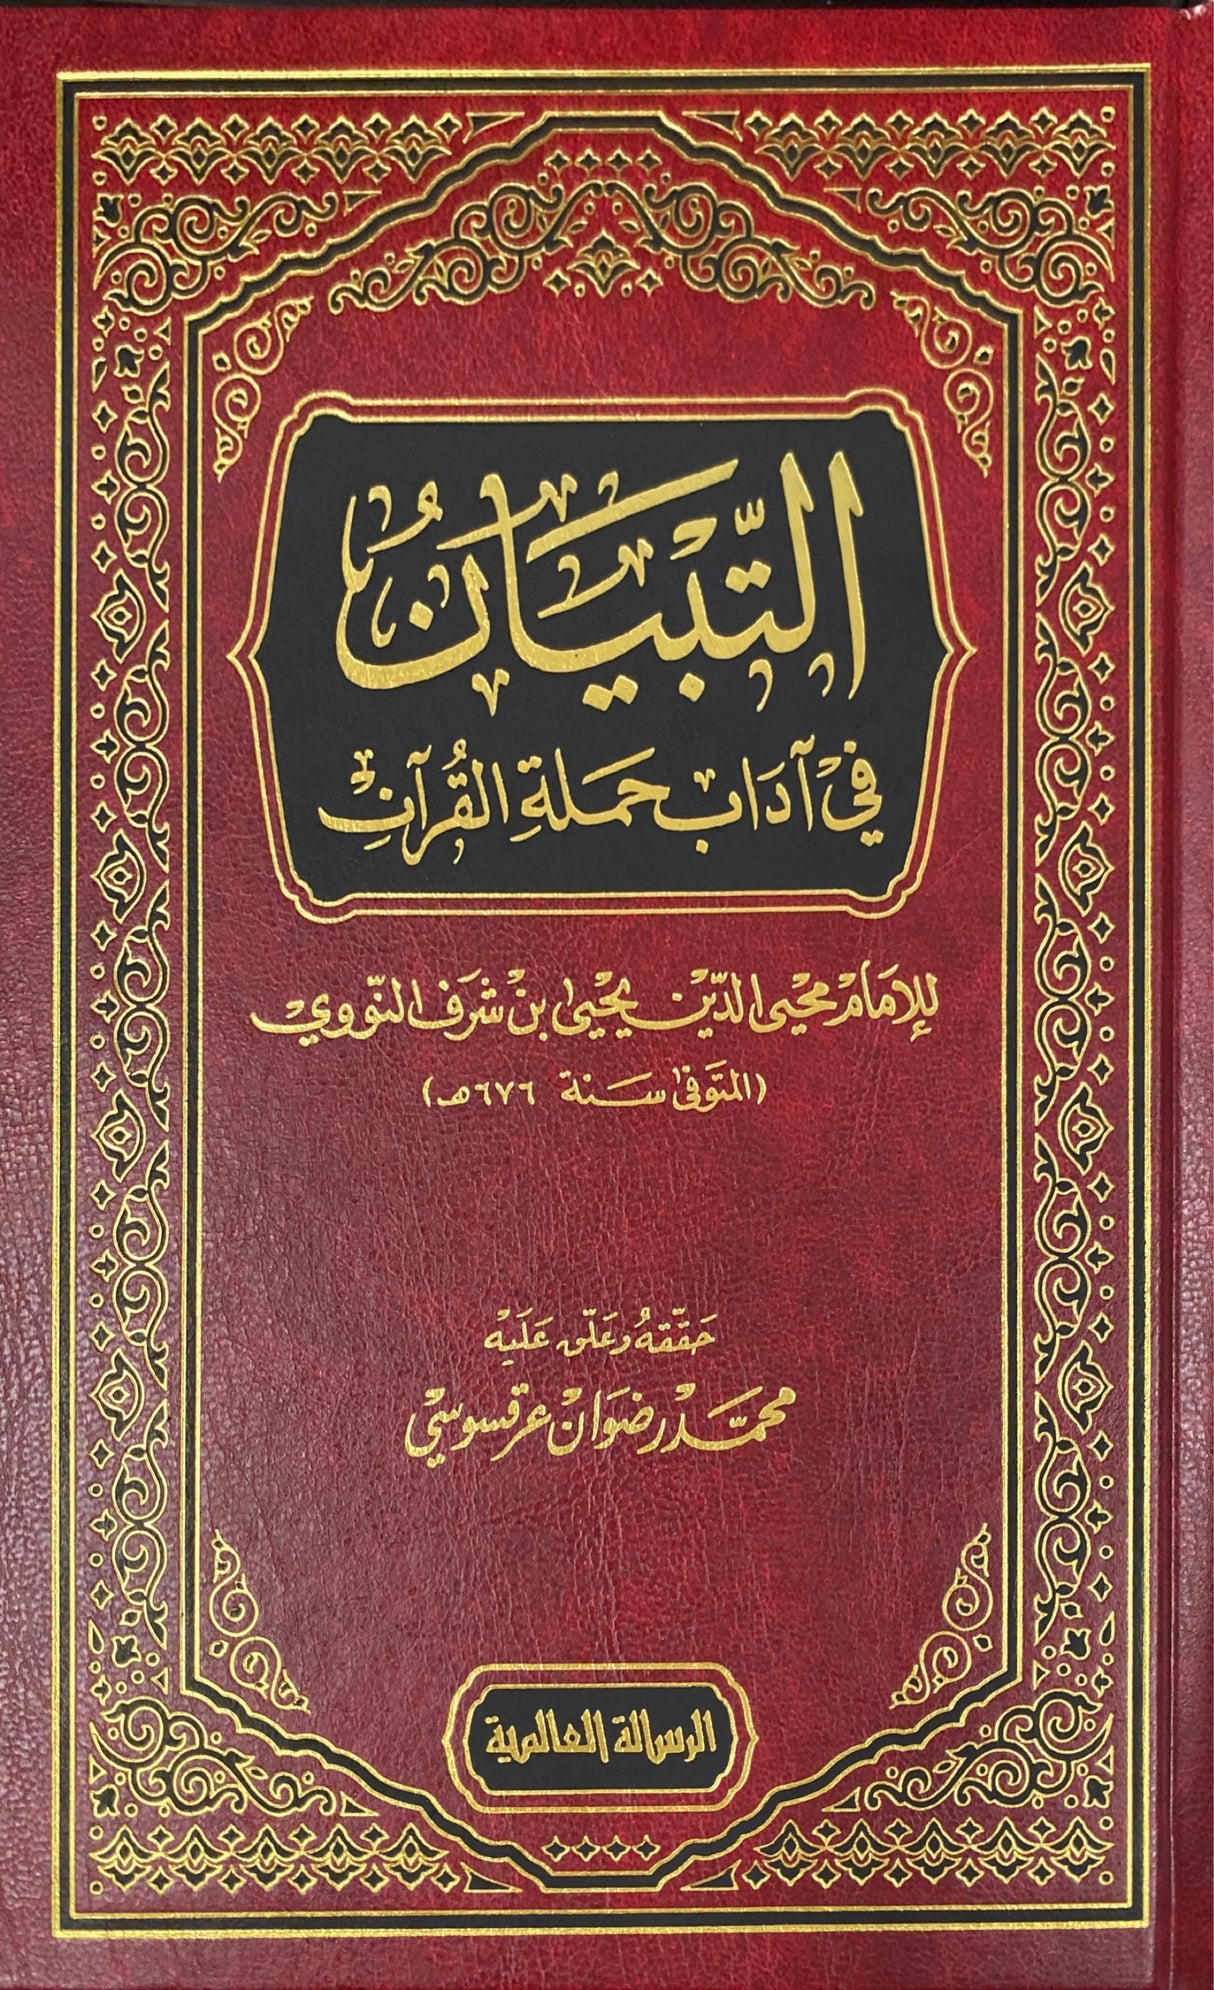 التبيان في اداب حملة القران    At Tibyan Fi Adaab Hamlat Al Quran (Risalah)